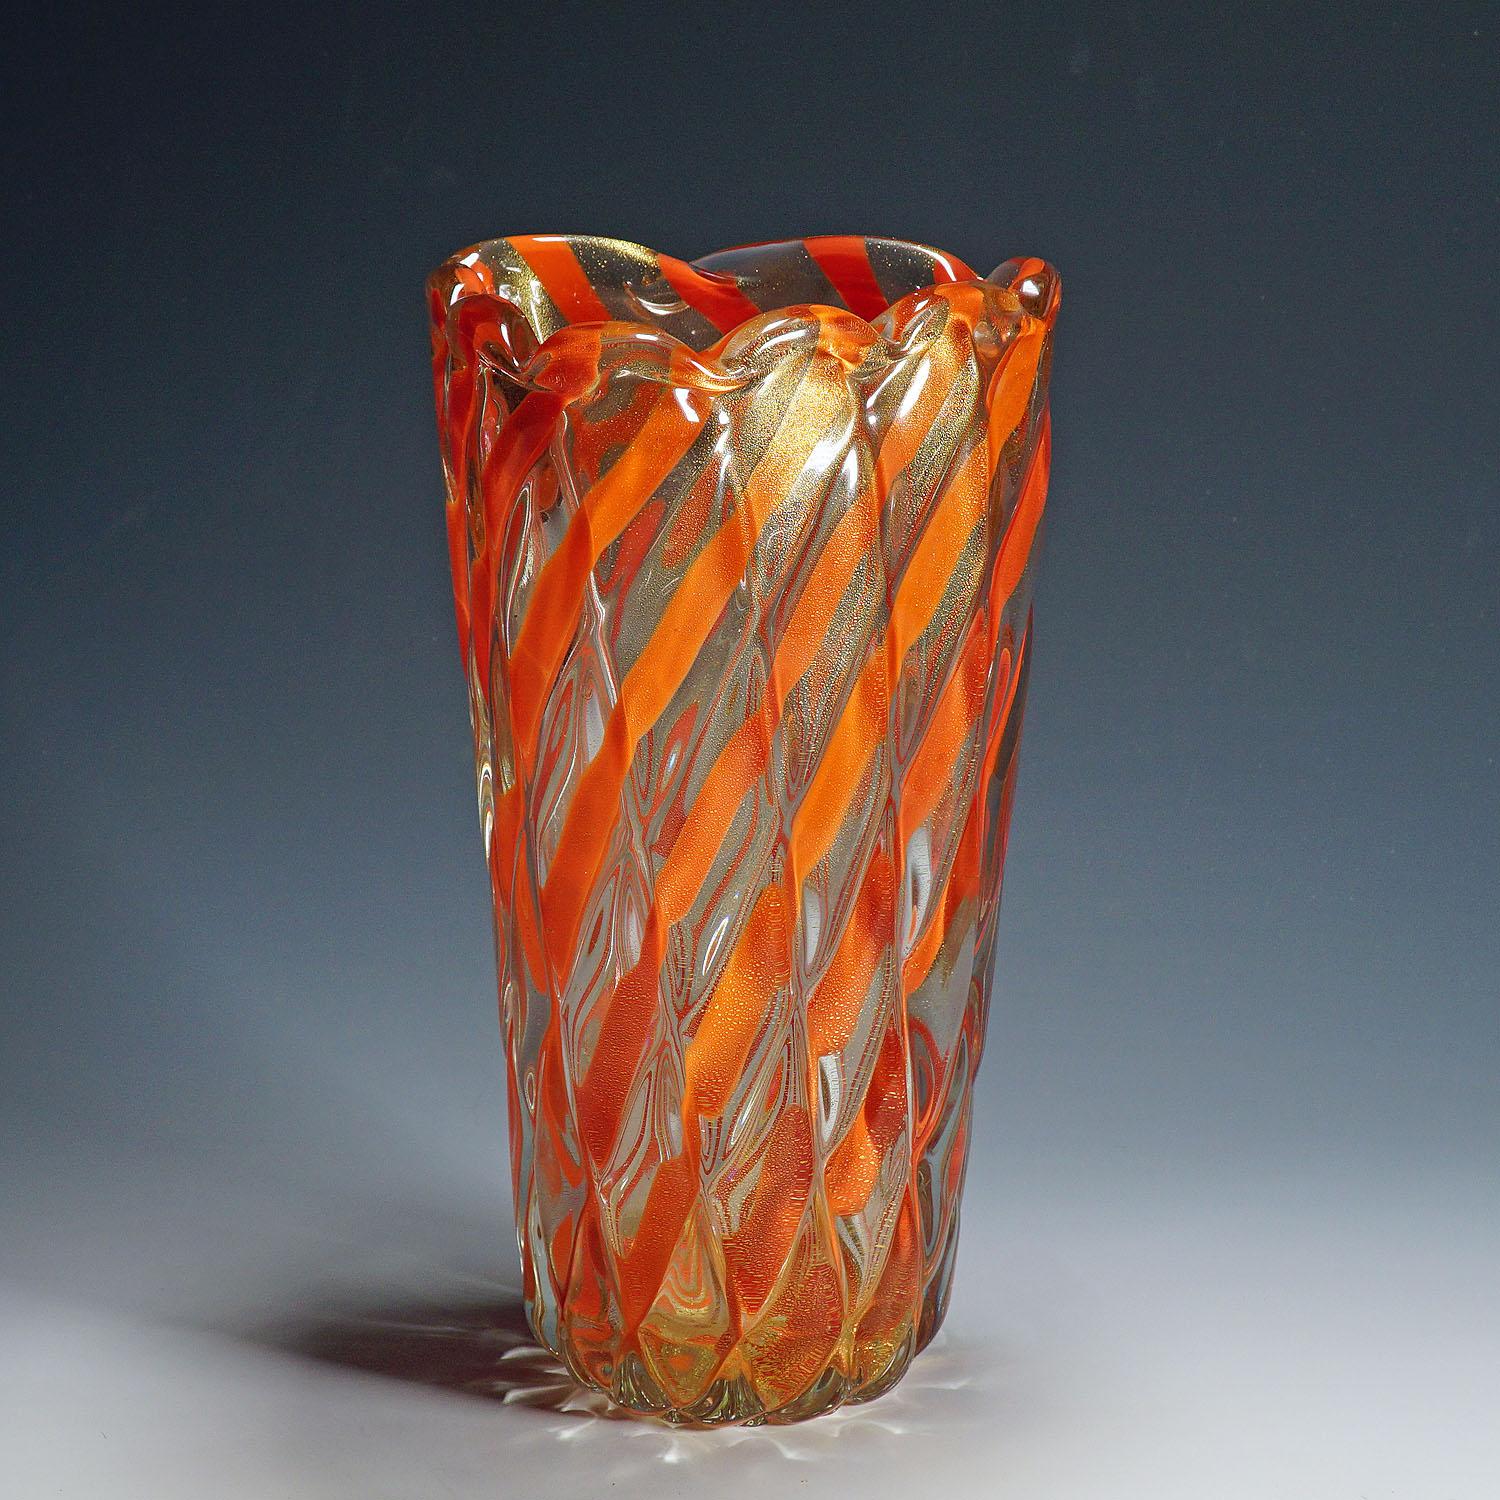 Vase 'Corallo Oro' nervuré d'Alfredo Barbini, années 1960.

Grand vase en verre d'art vénitien conçu par Alfredo Barbini pour Vetreria Alfredo Barbini vers les années 1960. Verre épais nervuré et torsadé avec des rubans rouge corail et des